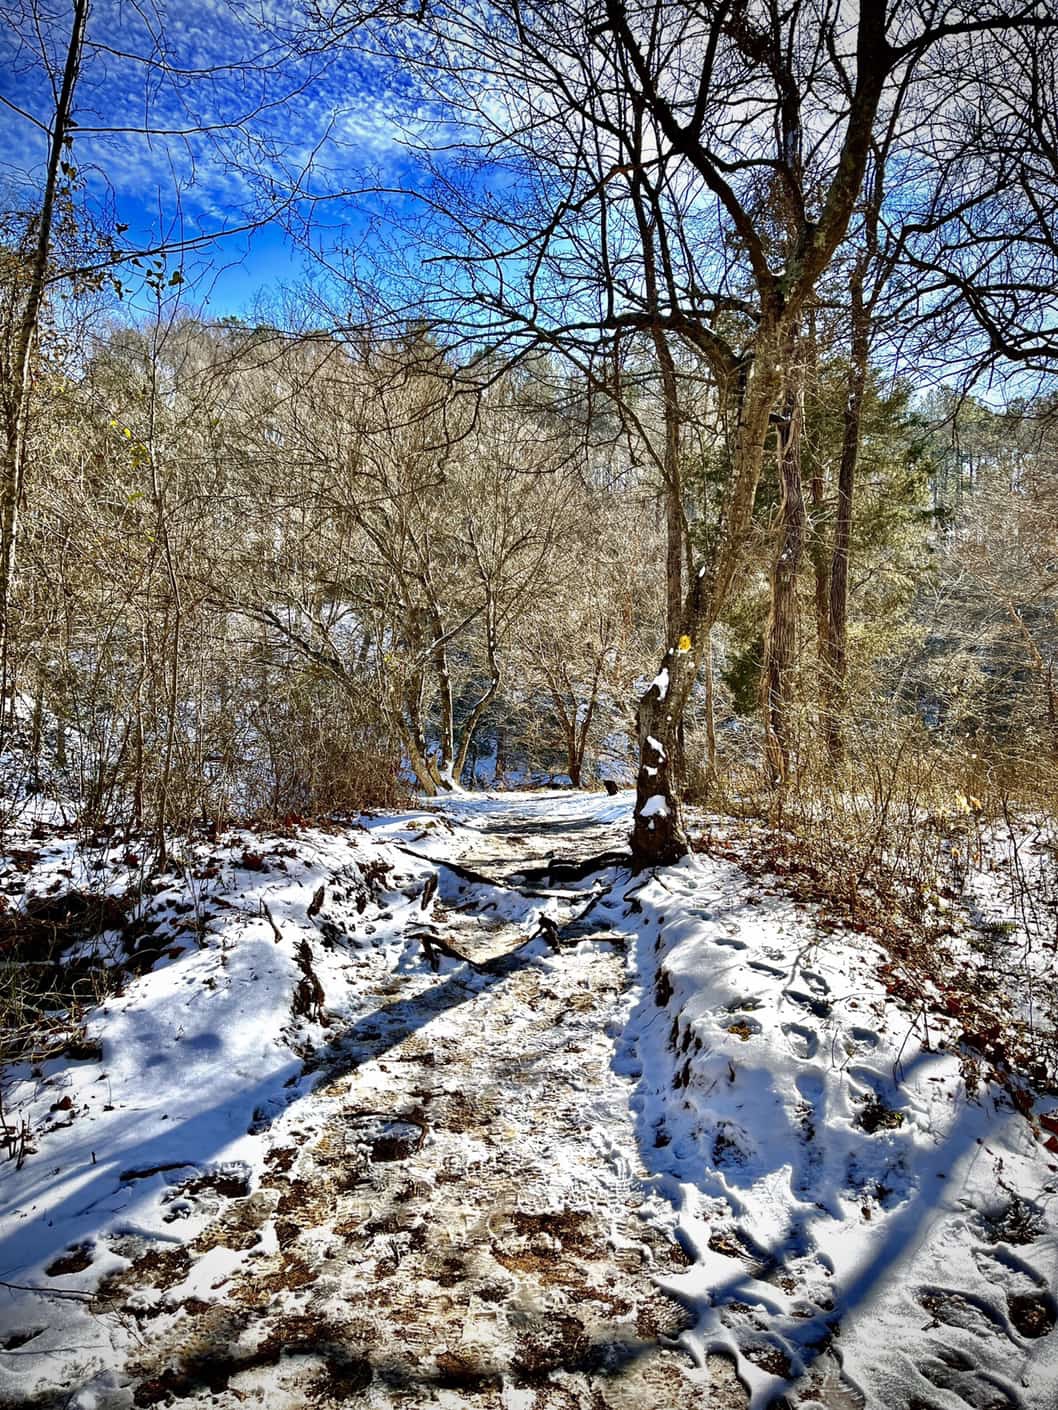 Snowy trail on hillside